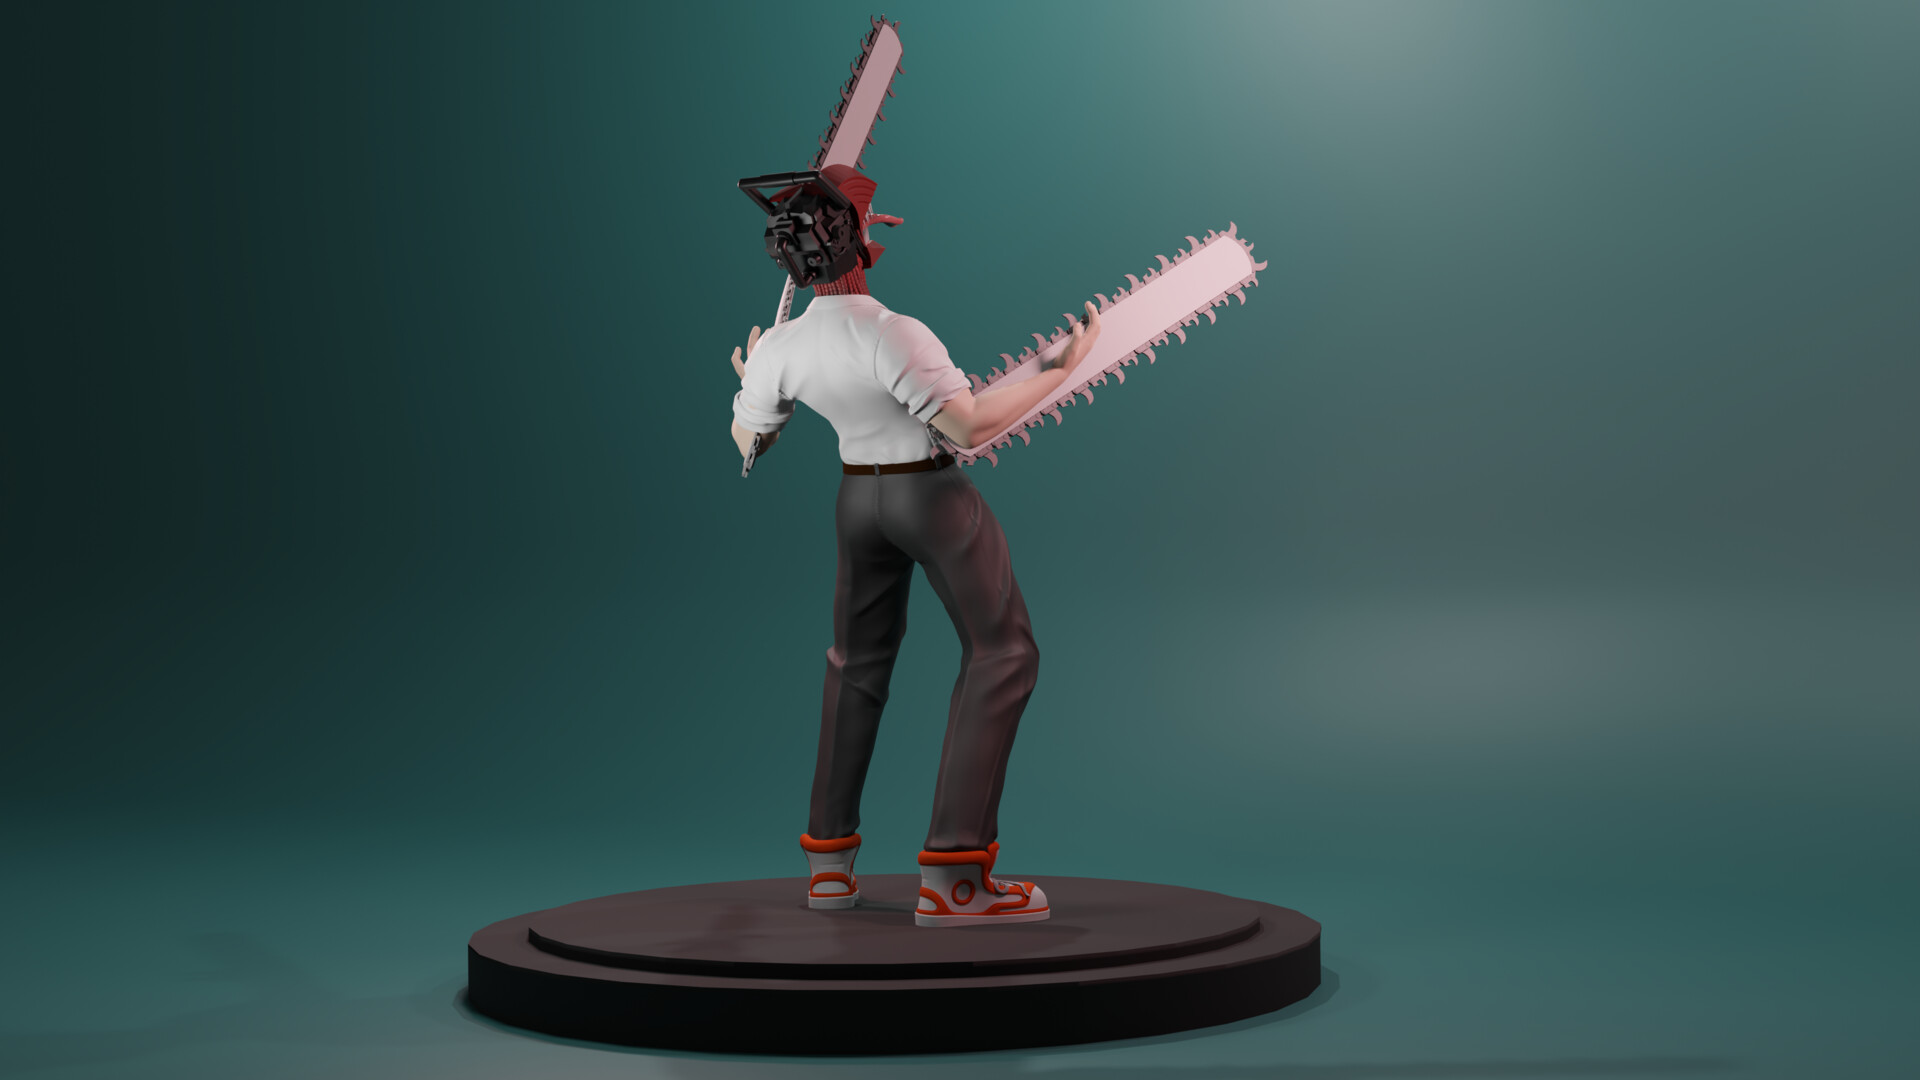 ArtStation - Personagens originais vestidos como personagens de chainsaw man